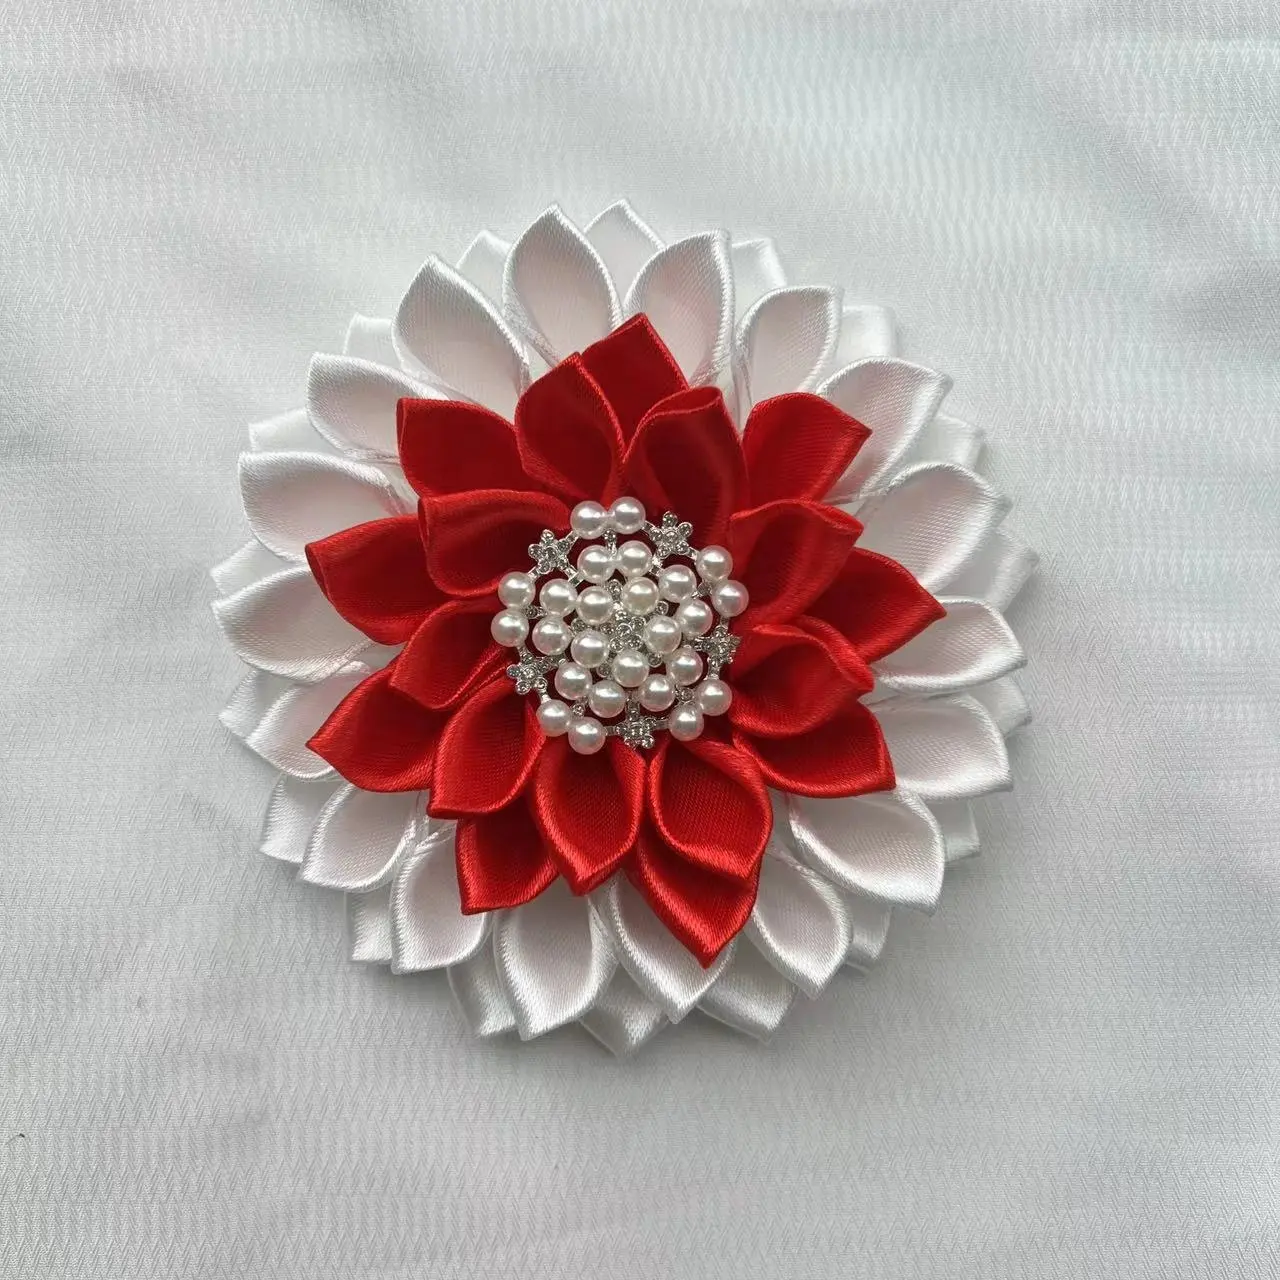 Benutzer definierte weiße und rote Schwestern schaft Brosche Blume 4,5x4,5 Zoll handgemachte Blume für Frauen Brosche Pin